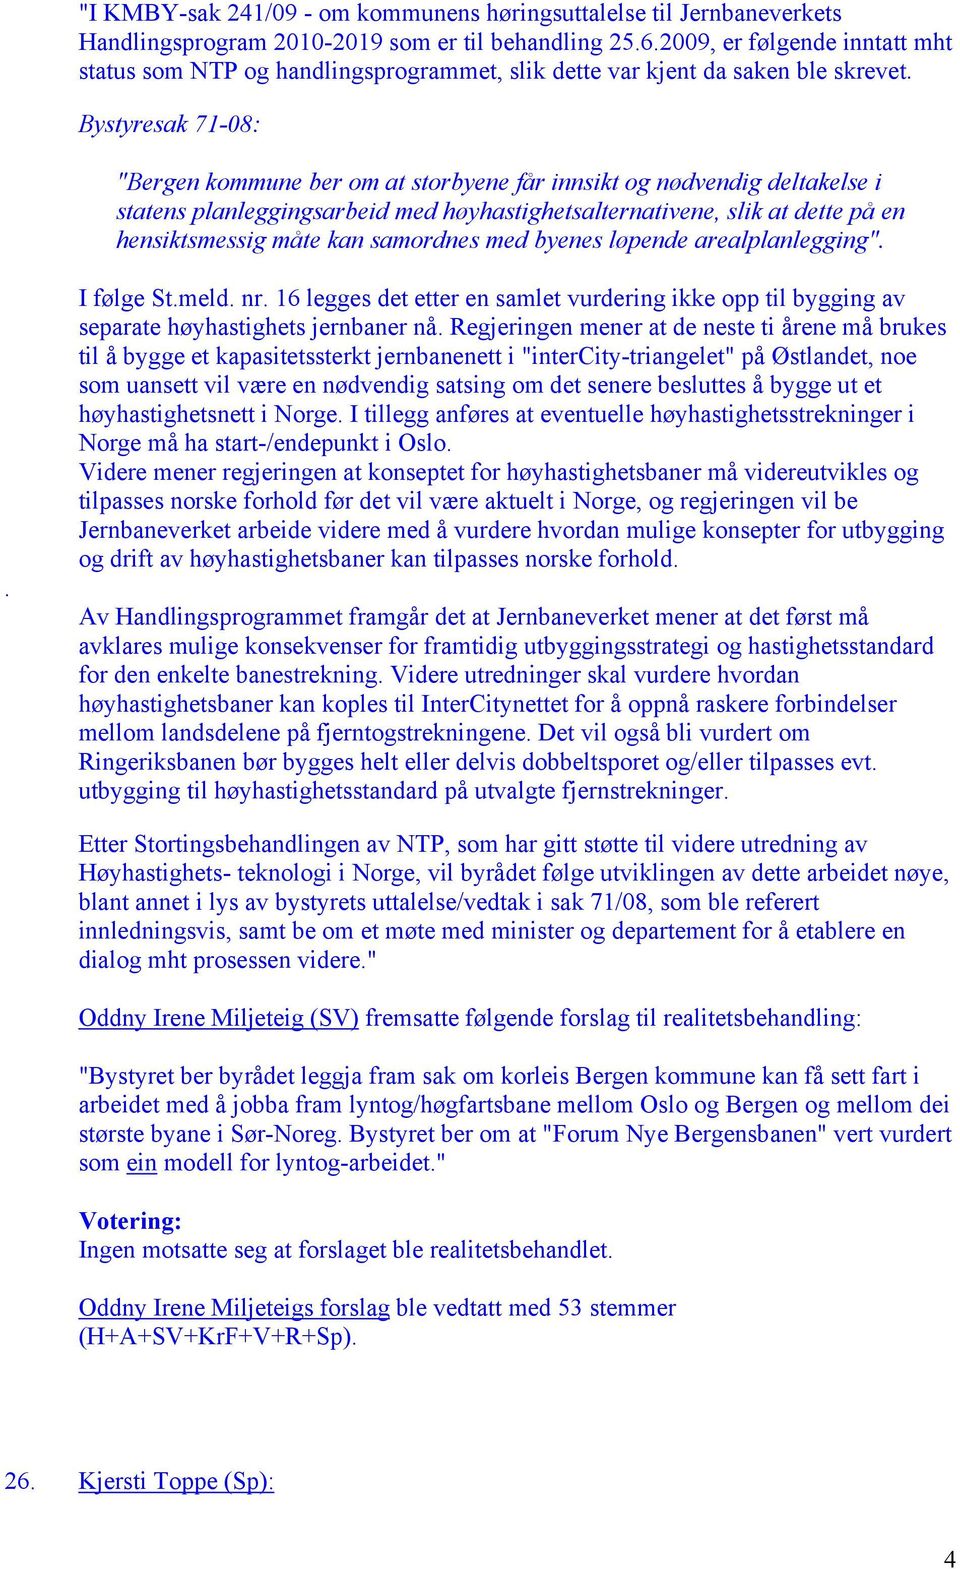 Bystyresak 71-08: "Bergen kommune ber om at storbyene får innsikt og nødvendig deltakelse i statens planleggingsarbeid med høyhastighetsalternativene, slik at dette på en hensiktsmessig måte kan